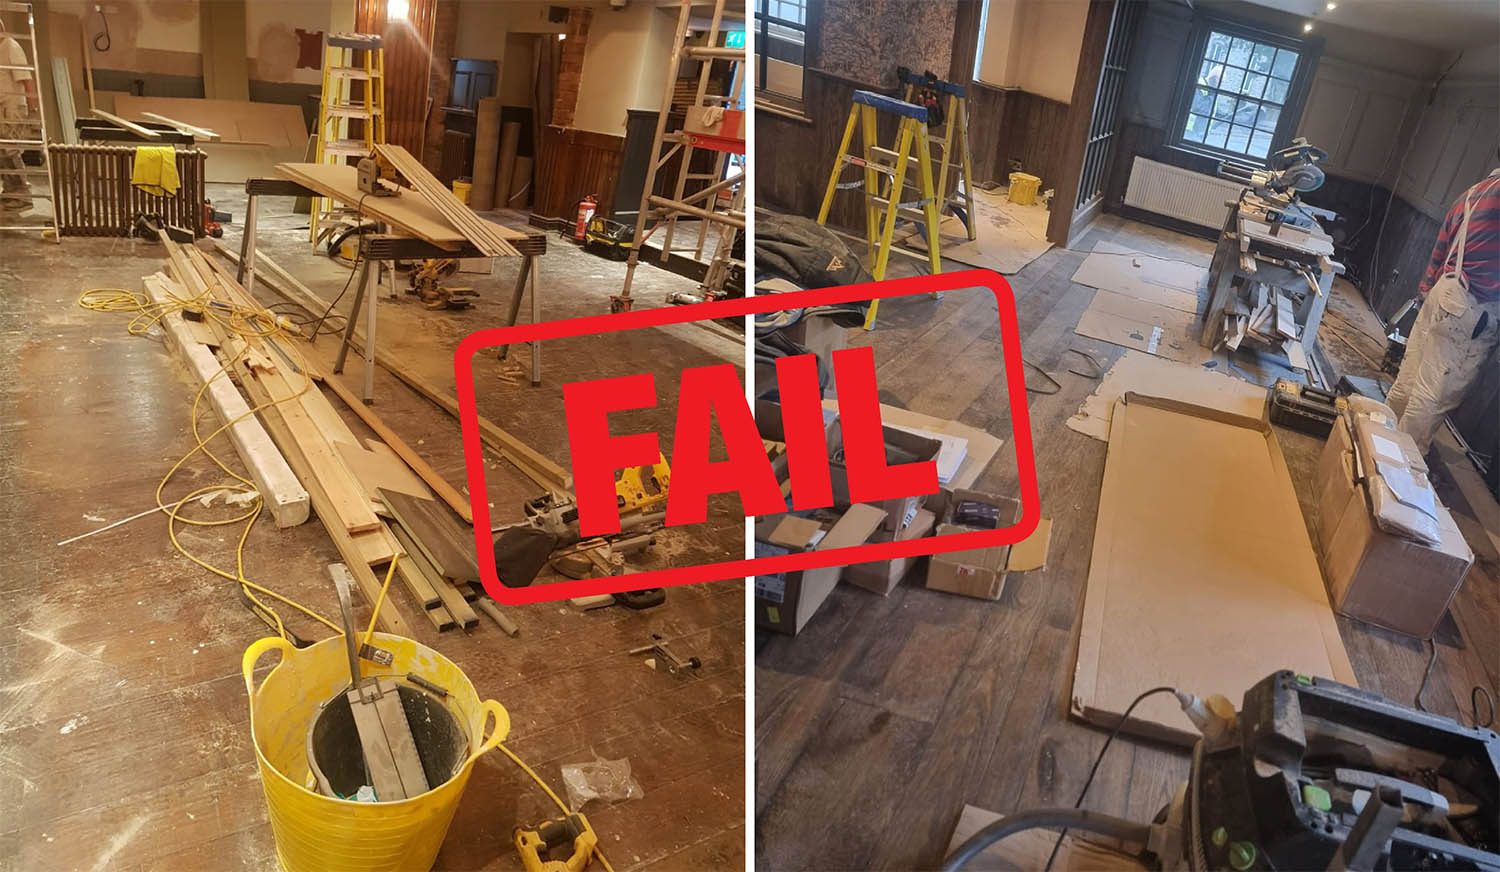 Wood floor construction - builders' fail